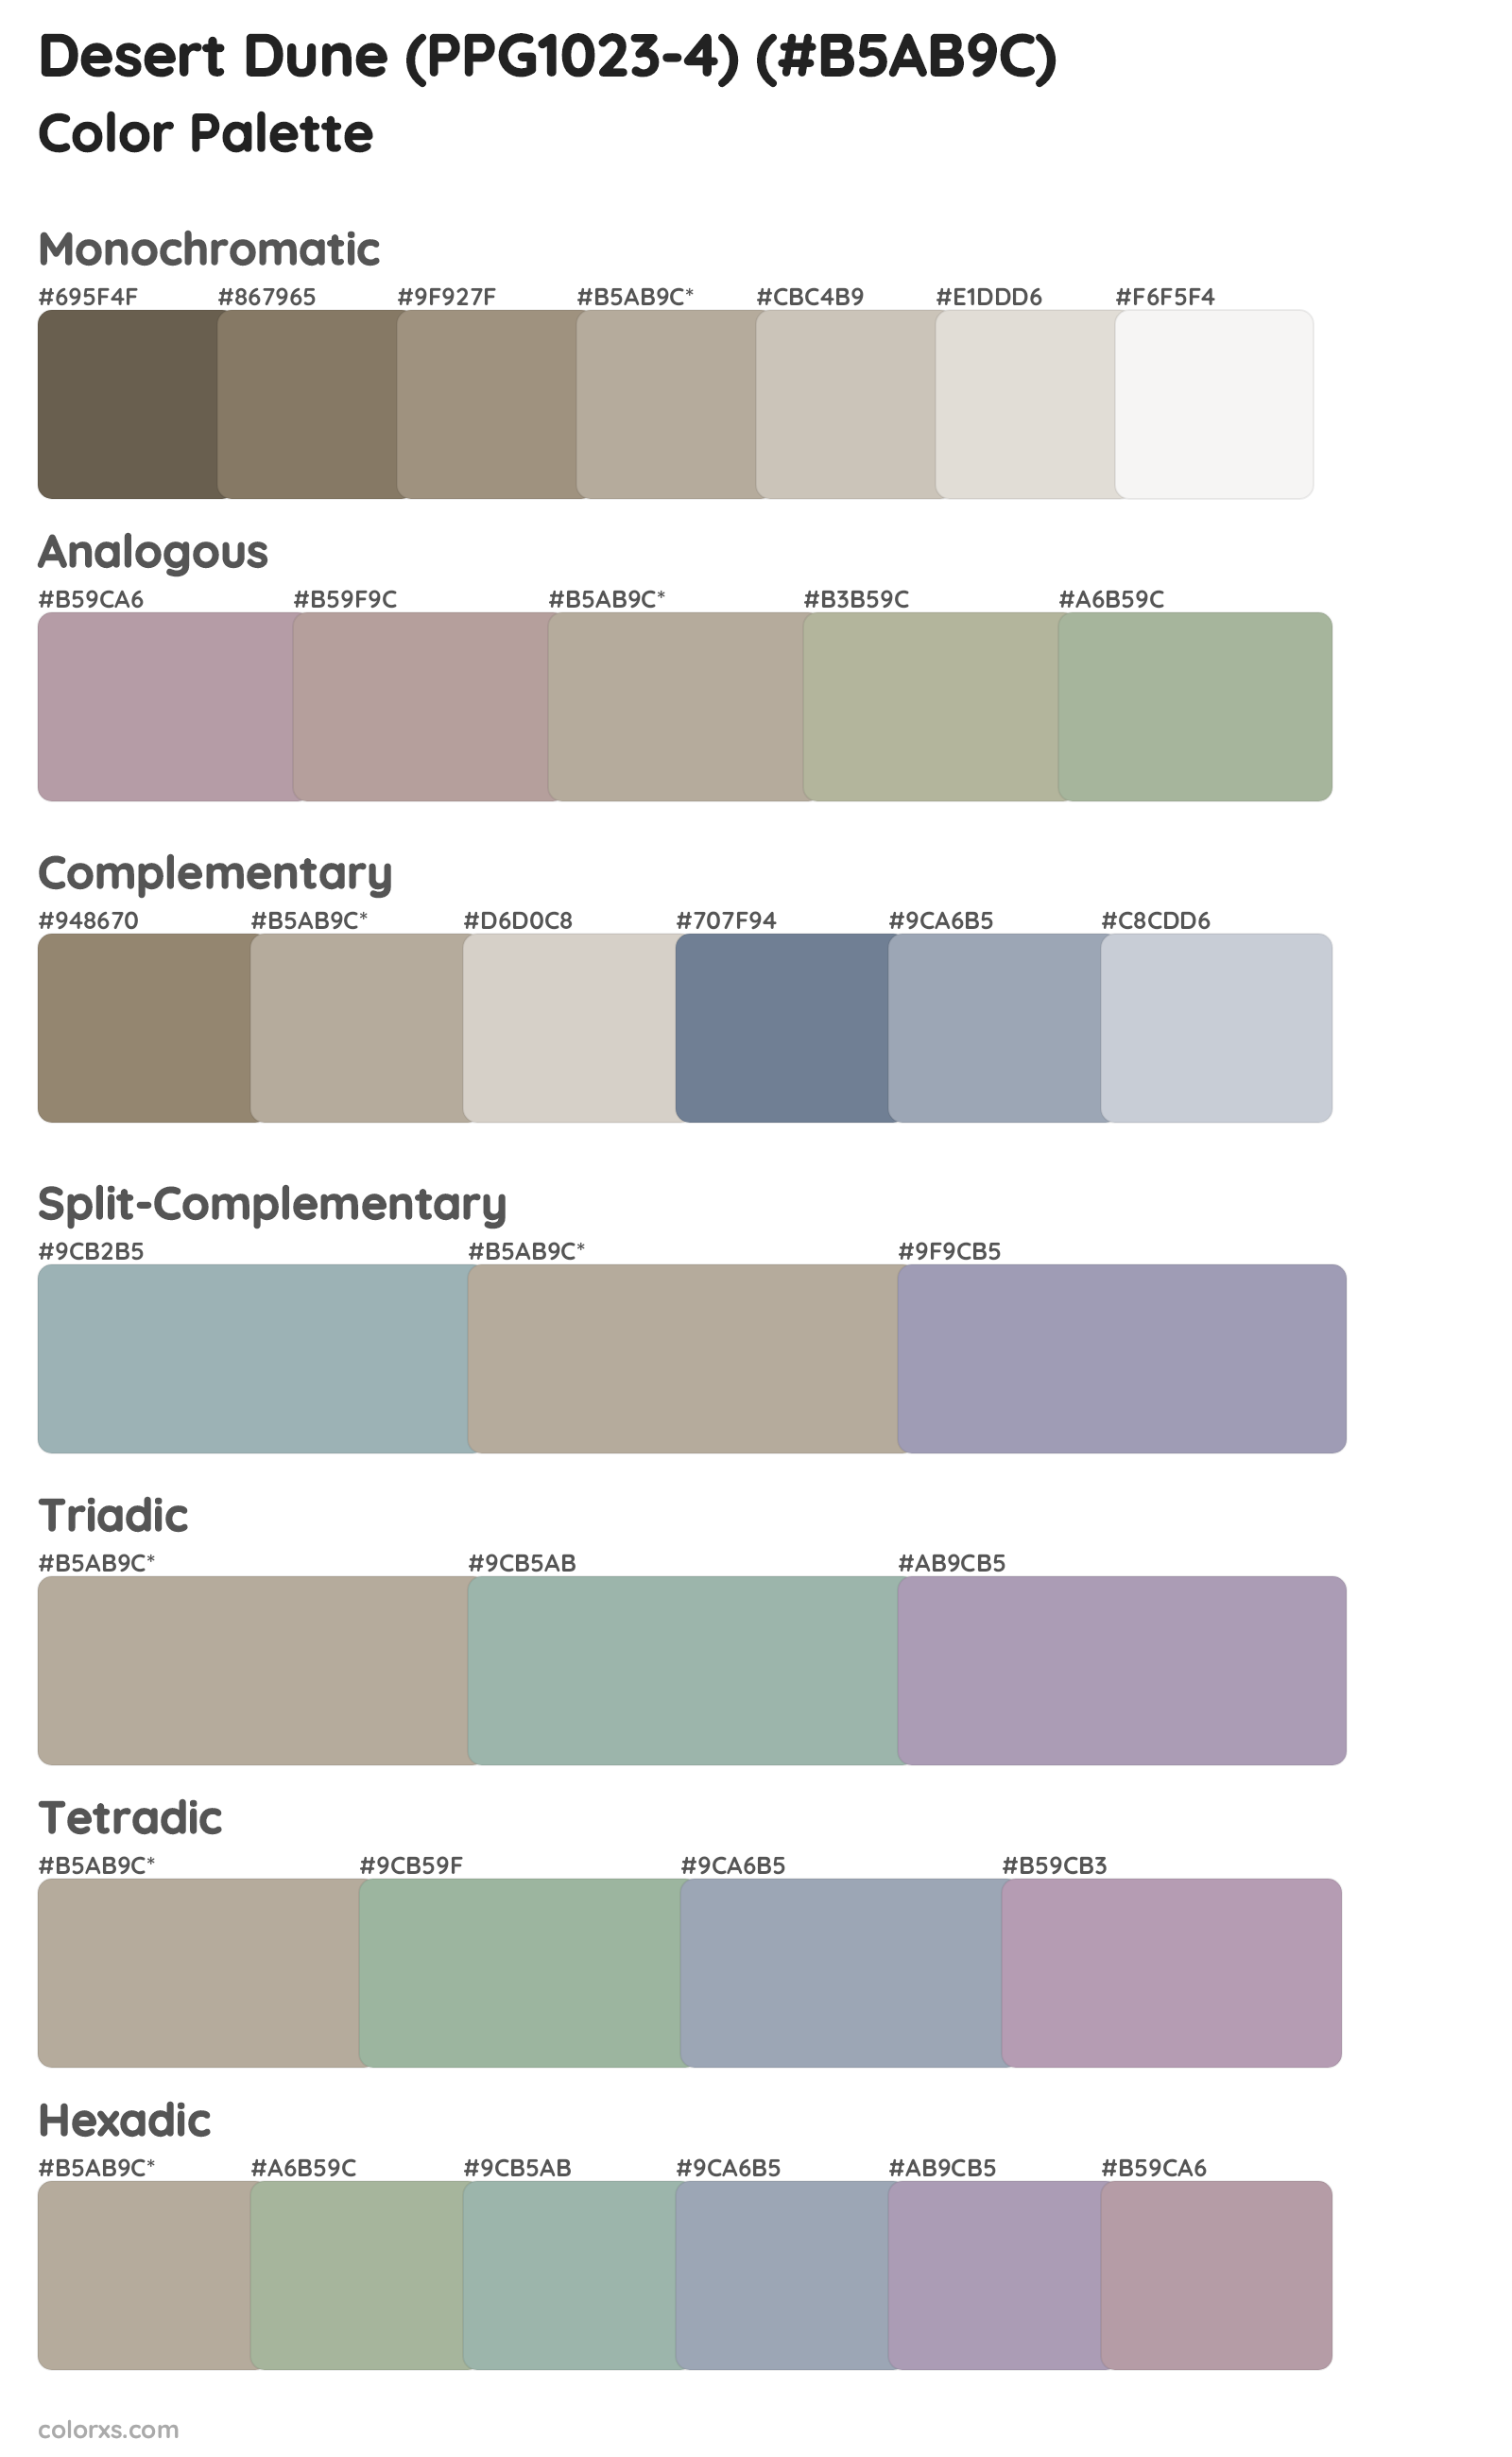 Desert Dune (PPG1023-4) Color Scheme Palettes